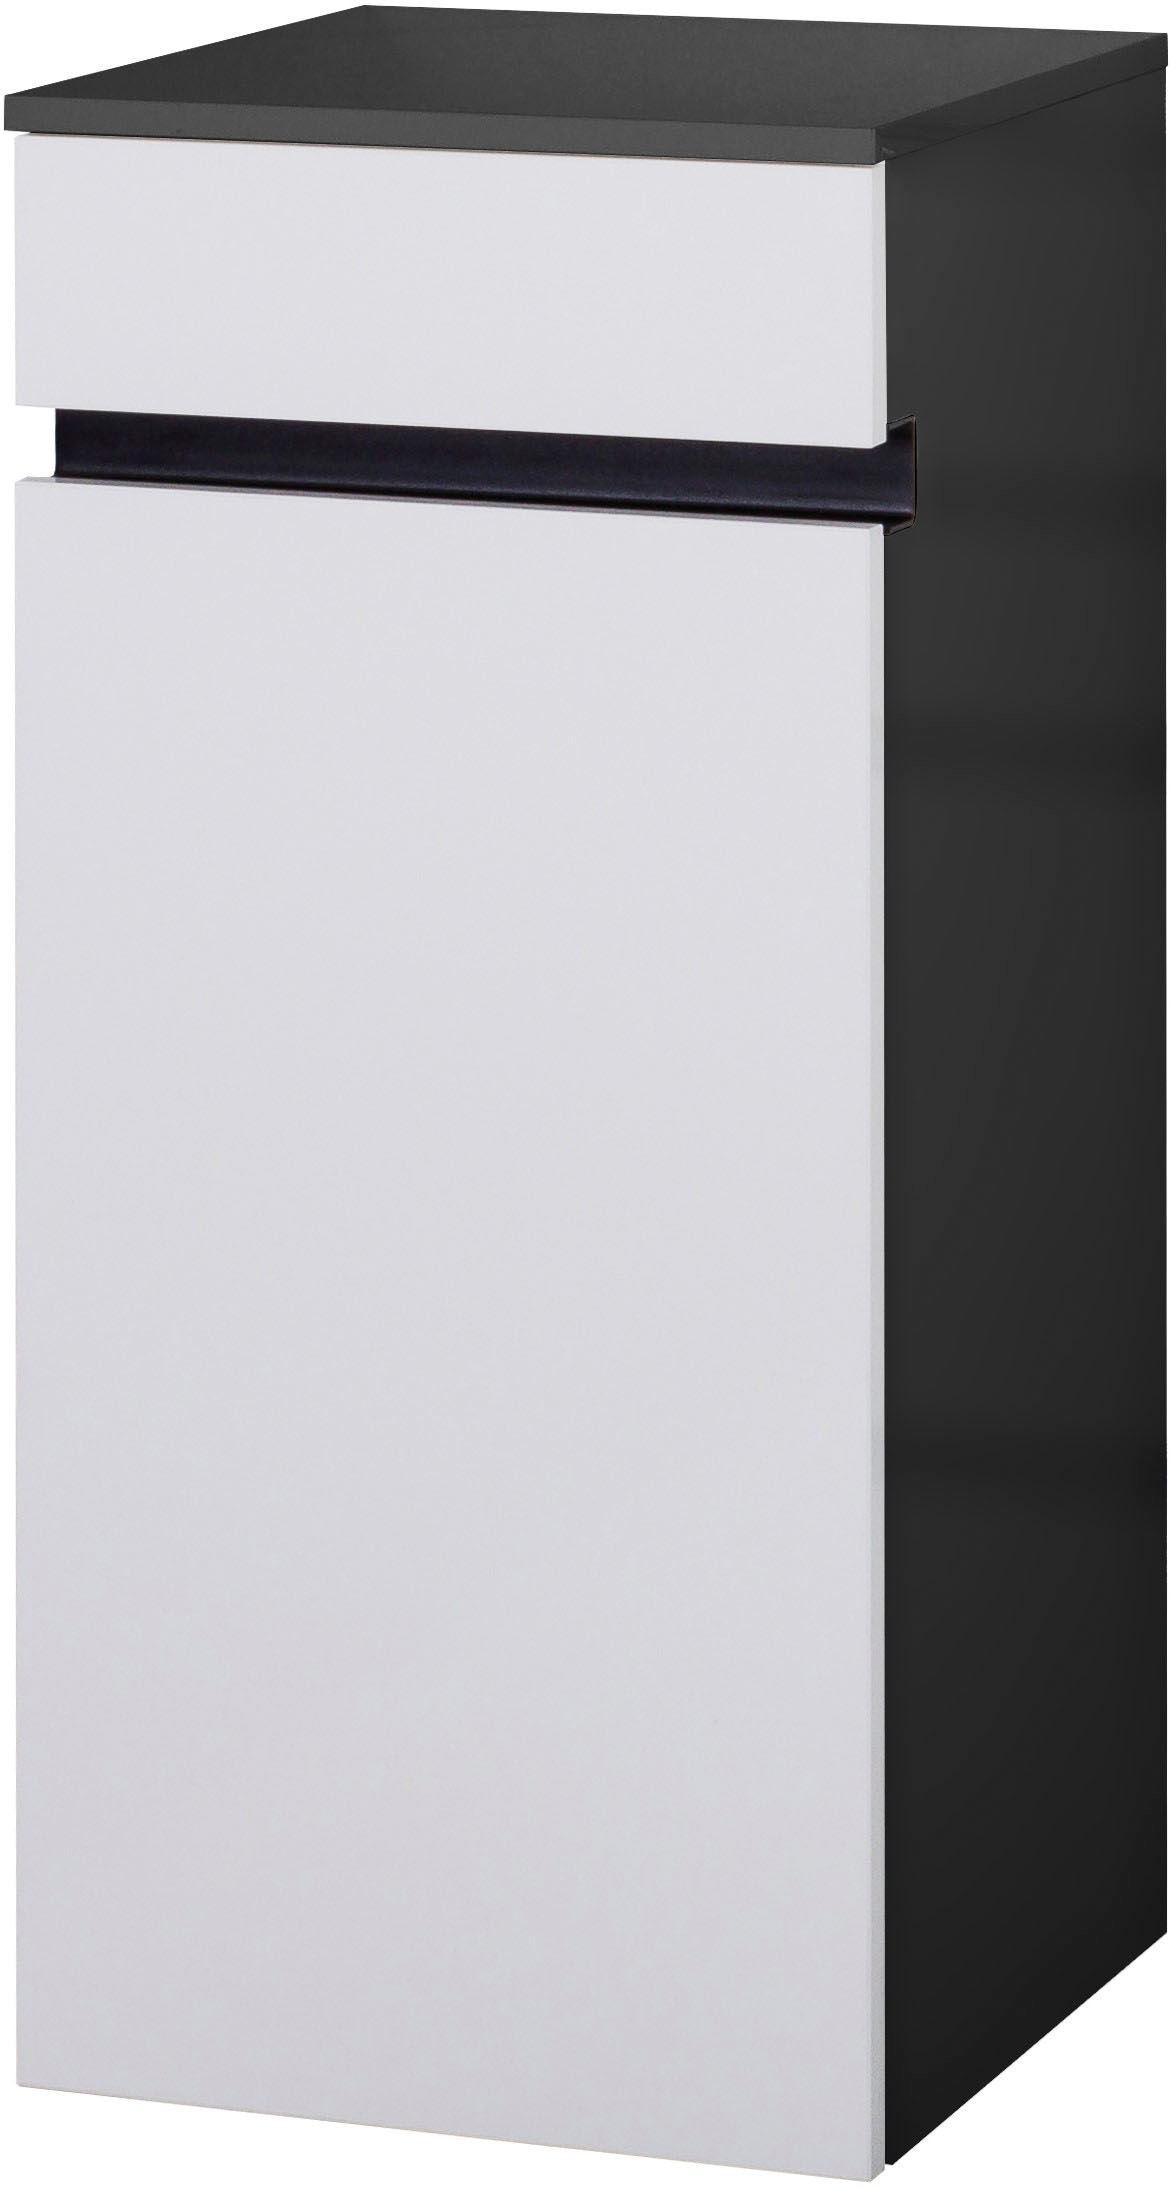 MARLIN Midischrank »3510clarus«, 40 cm breit, Soft-Close-Funktion, vormontierter Badschrank, Badmöbel